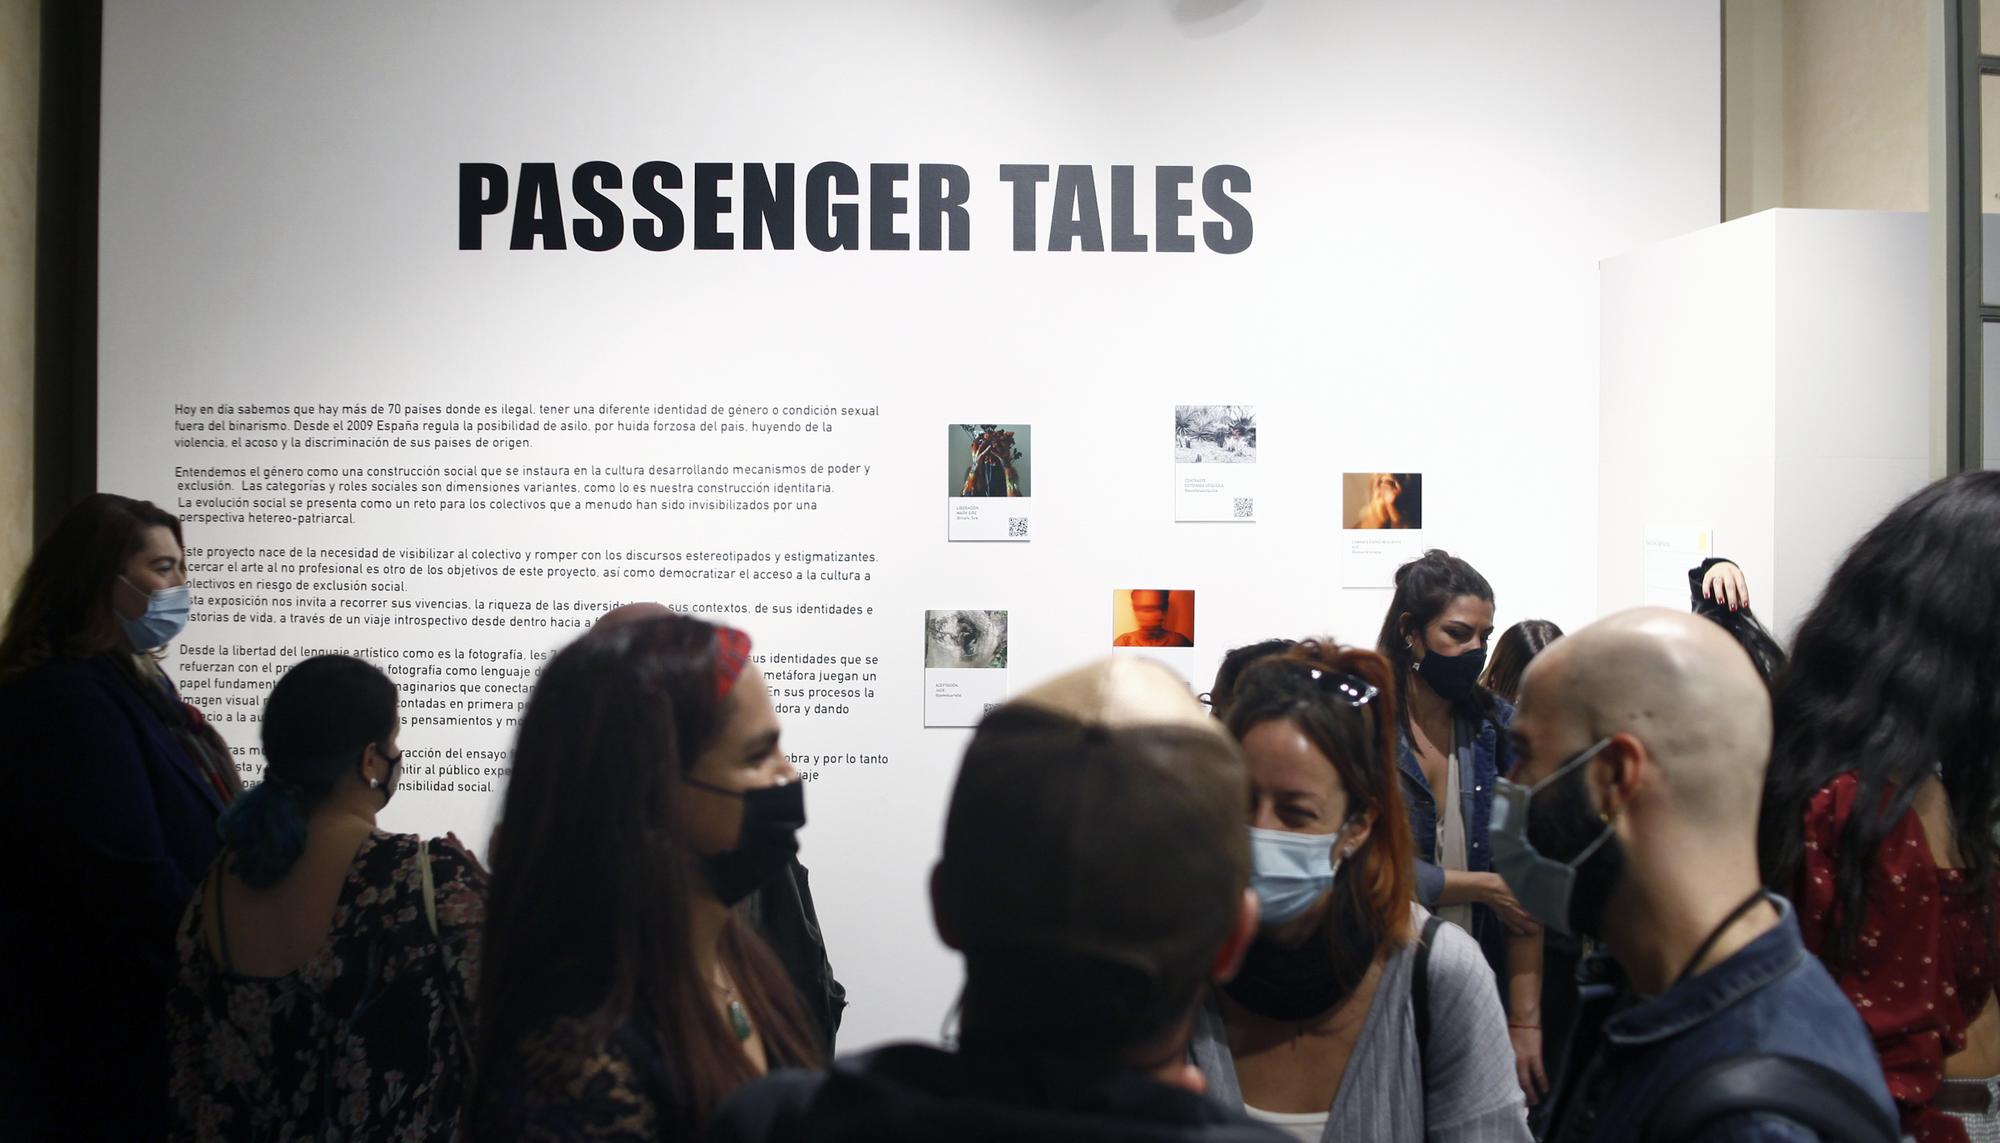 Presentación de la exposición de fotografía participativa "PASSENGER TALES" en el CC Pati Llimona de Barcelona